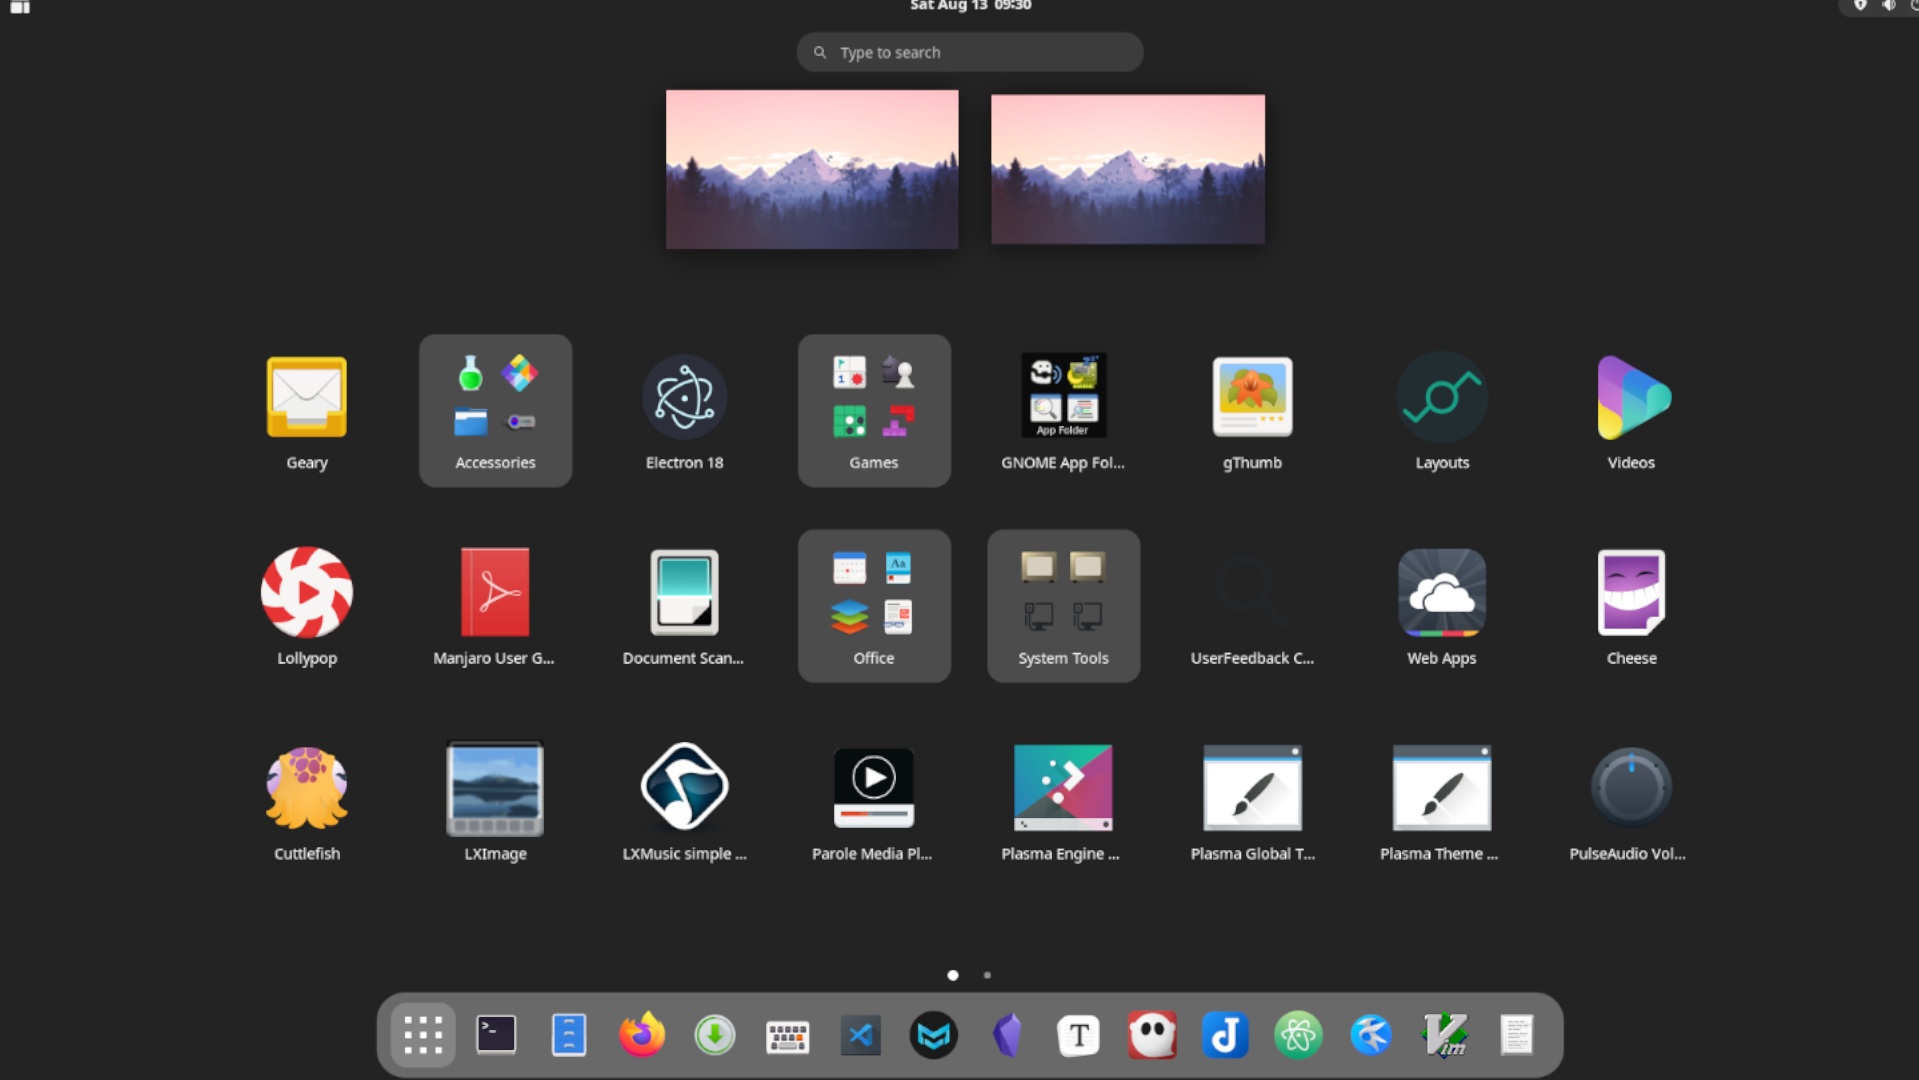 GNOME Desktop Environment App Overview